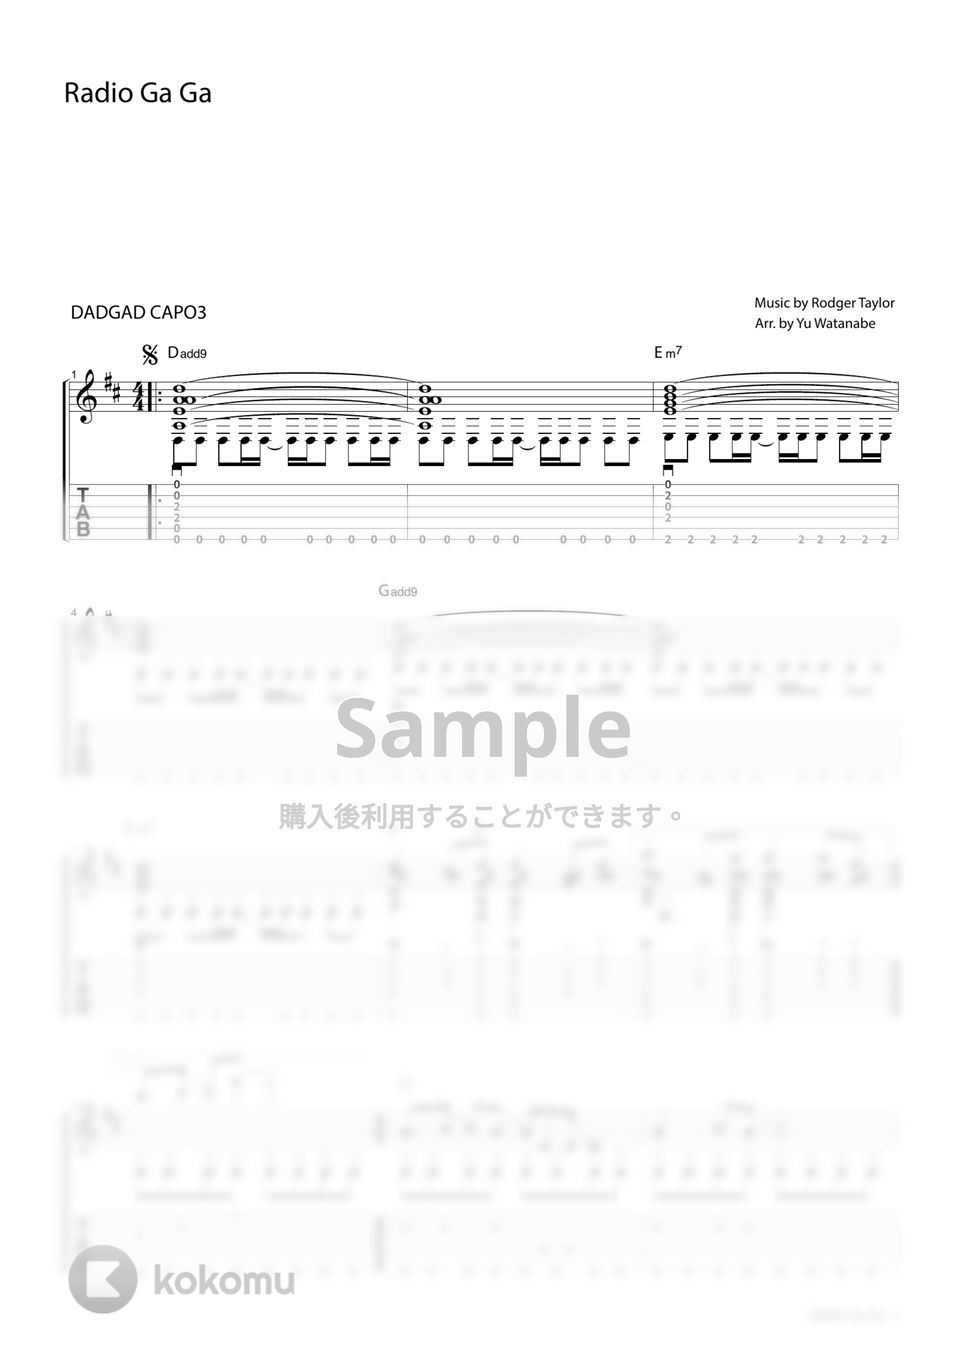 Queen - Radio Ga Ga by わたなべゆう